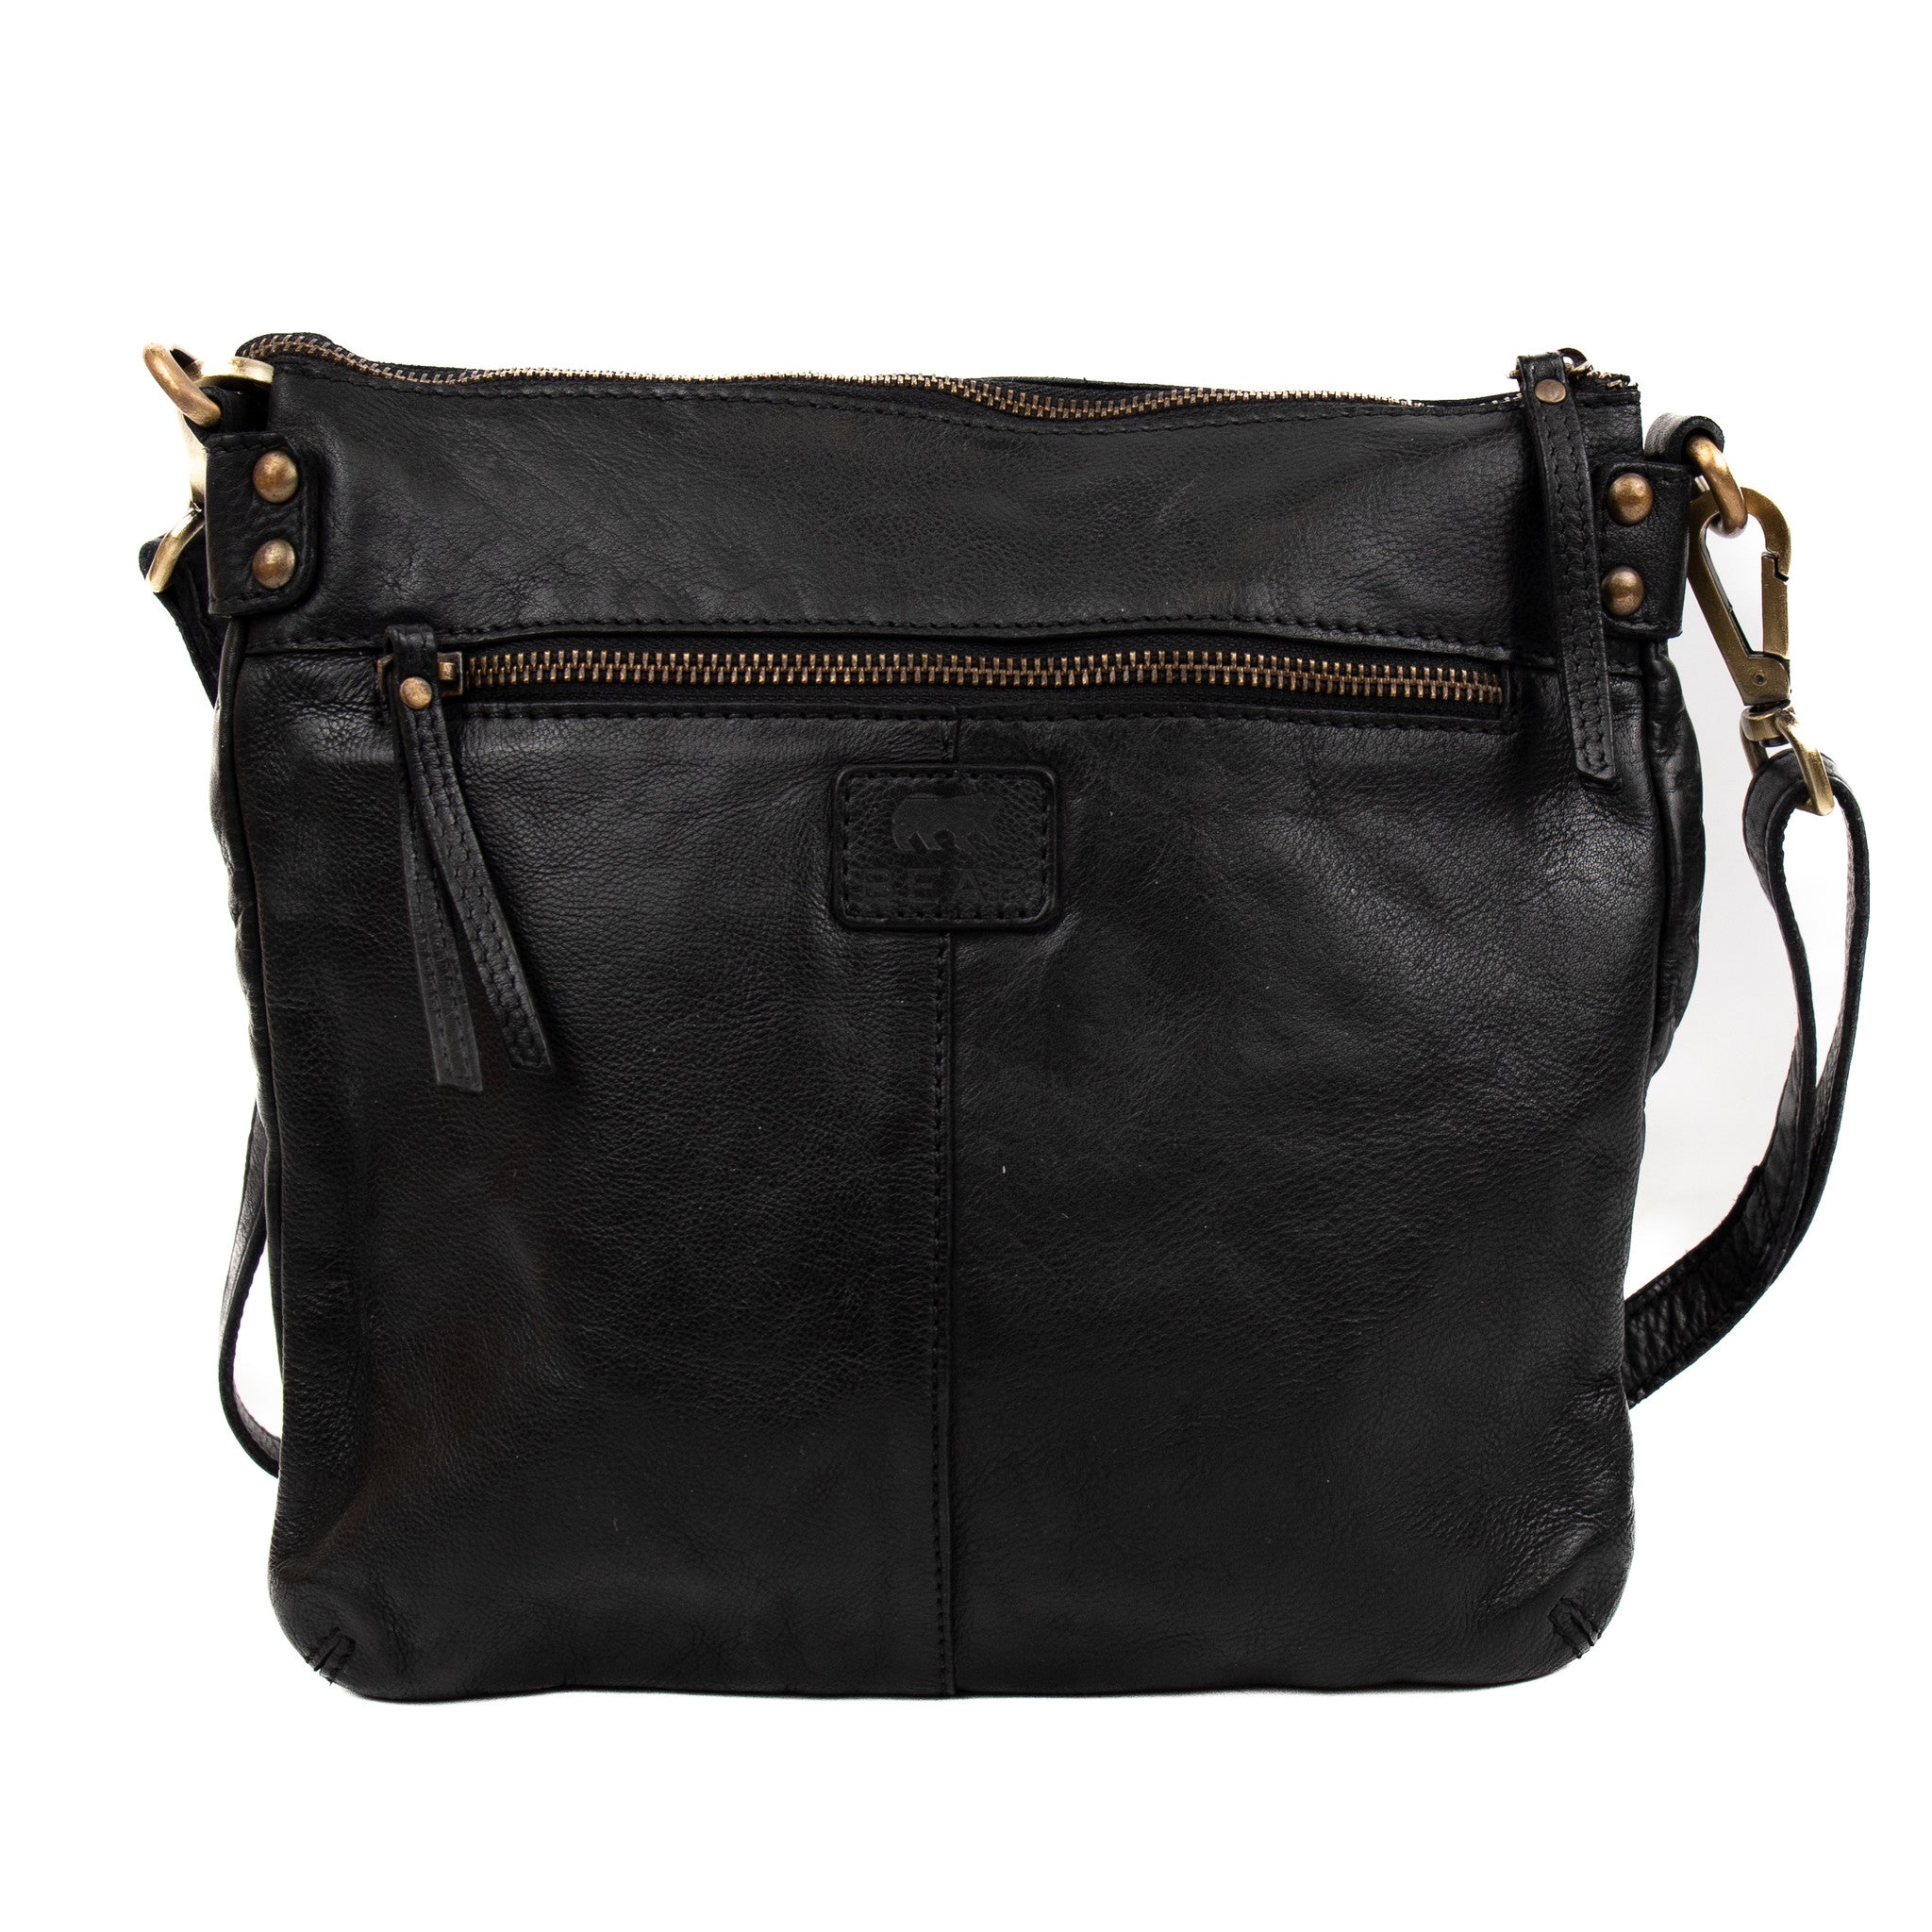 Shoulder bag 'Sita' black - MJ 1762